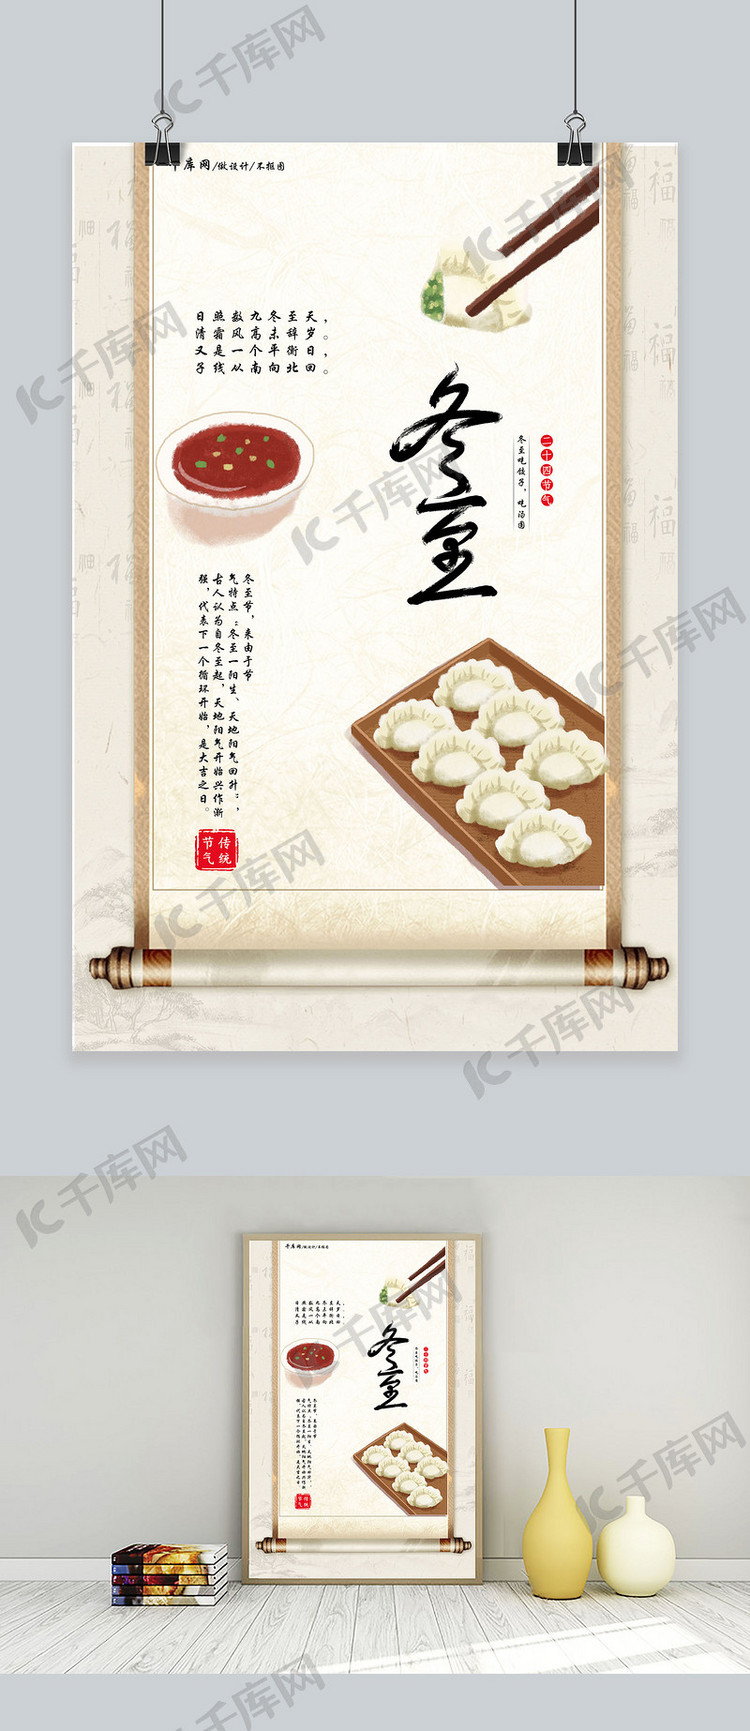 中国风创意二十四节气之冬至画轴饺子海报